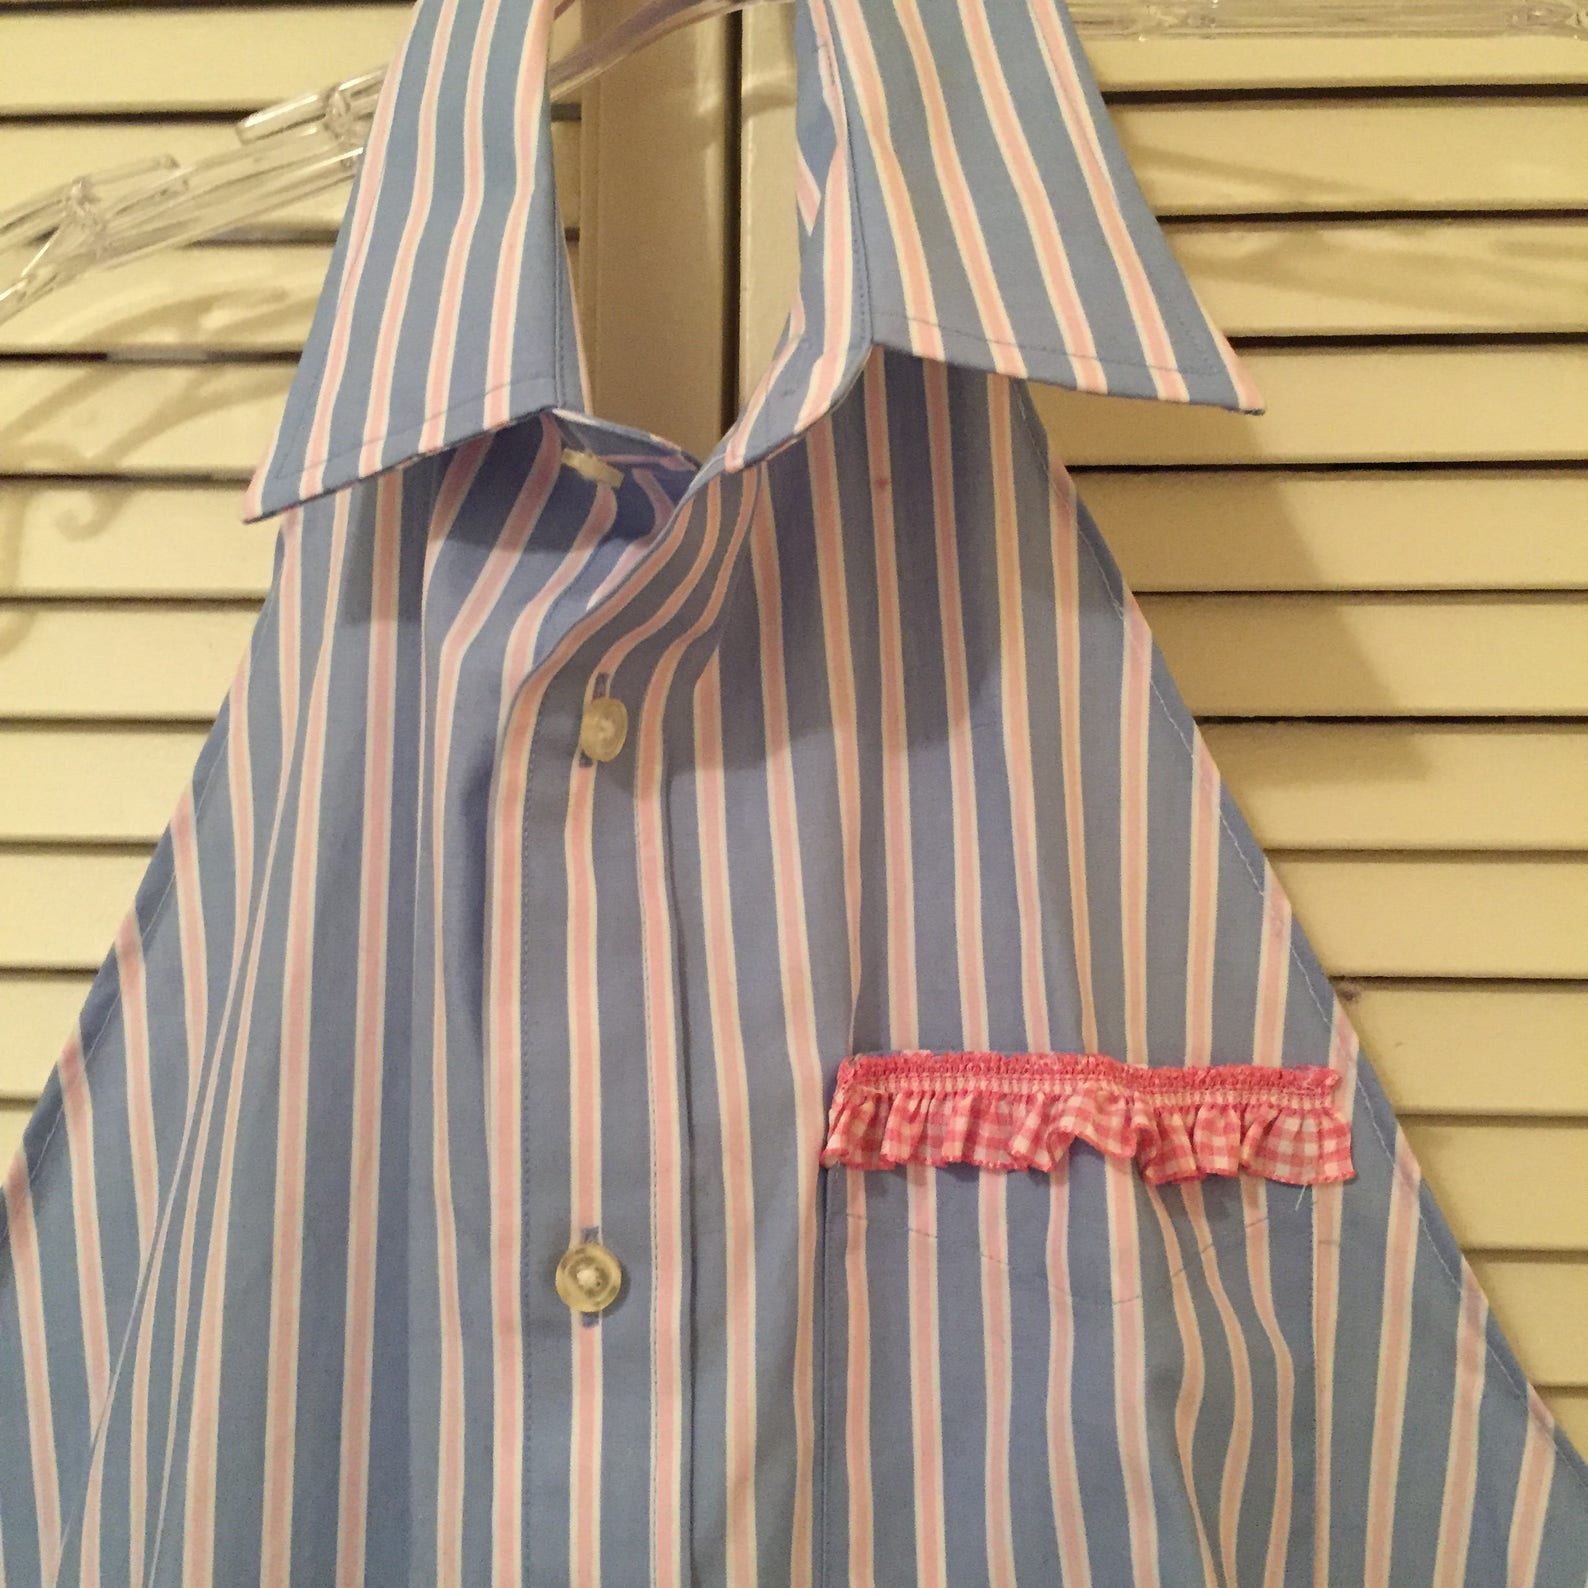 OOAK Apron/repurposed men's shirt/ pink ruffled trim | Etsy